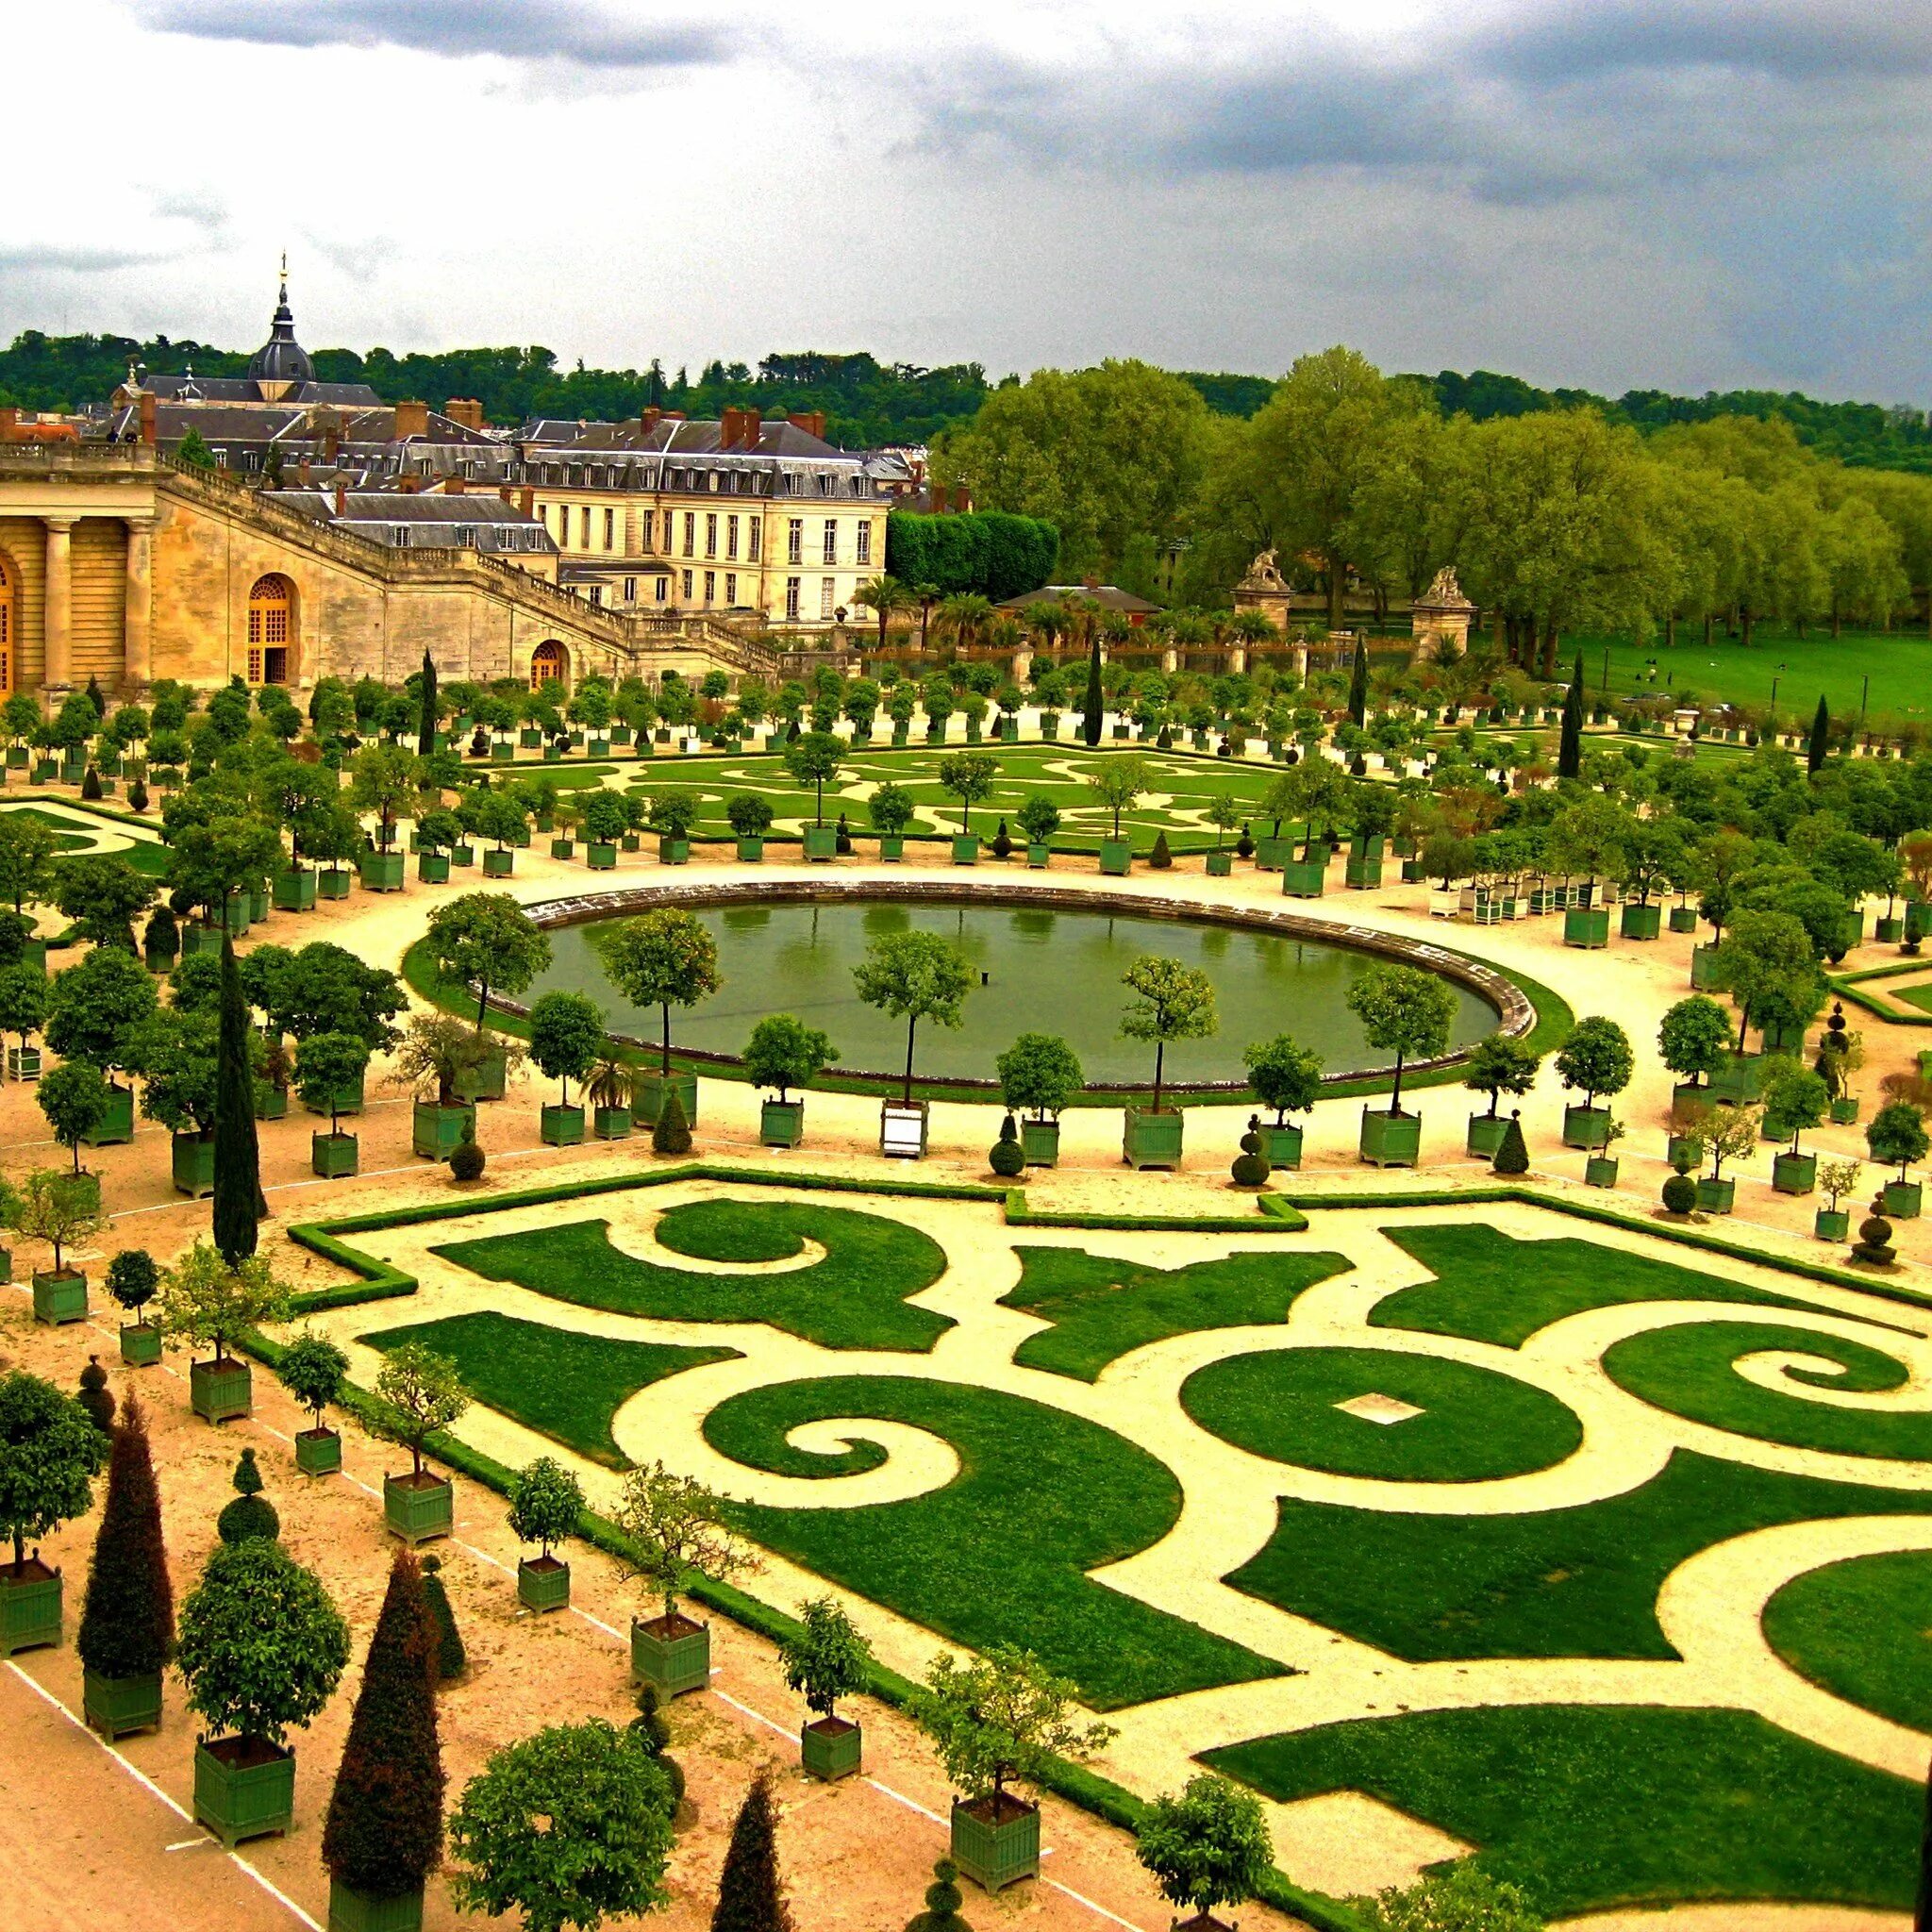 Про версаль. Версальский дворцово-парковый комплекс, Франция. Парковый ансамбль Версаля во Франции. Версальский дворец Версаль Франция.